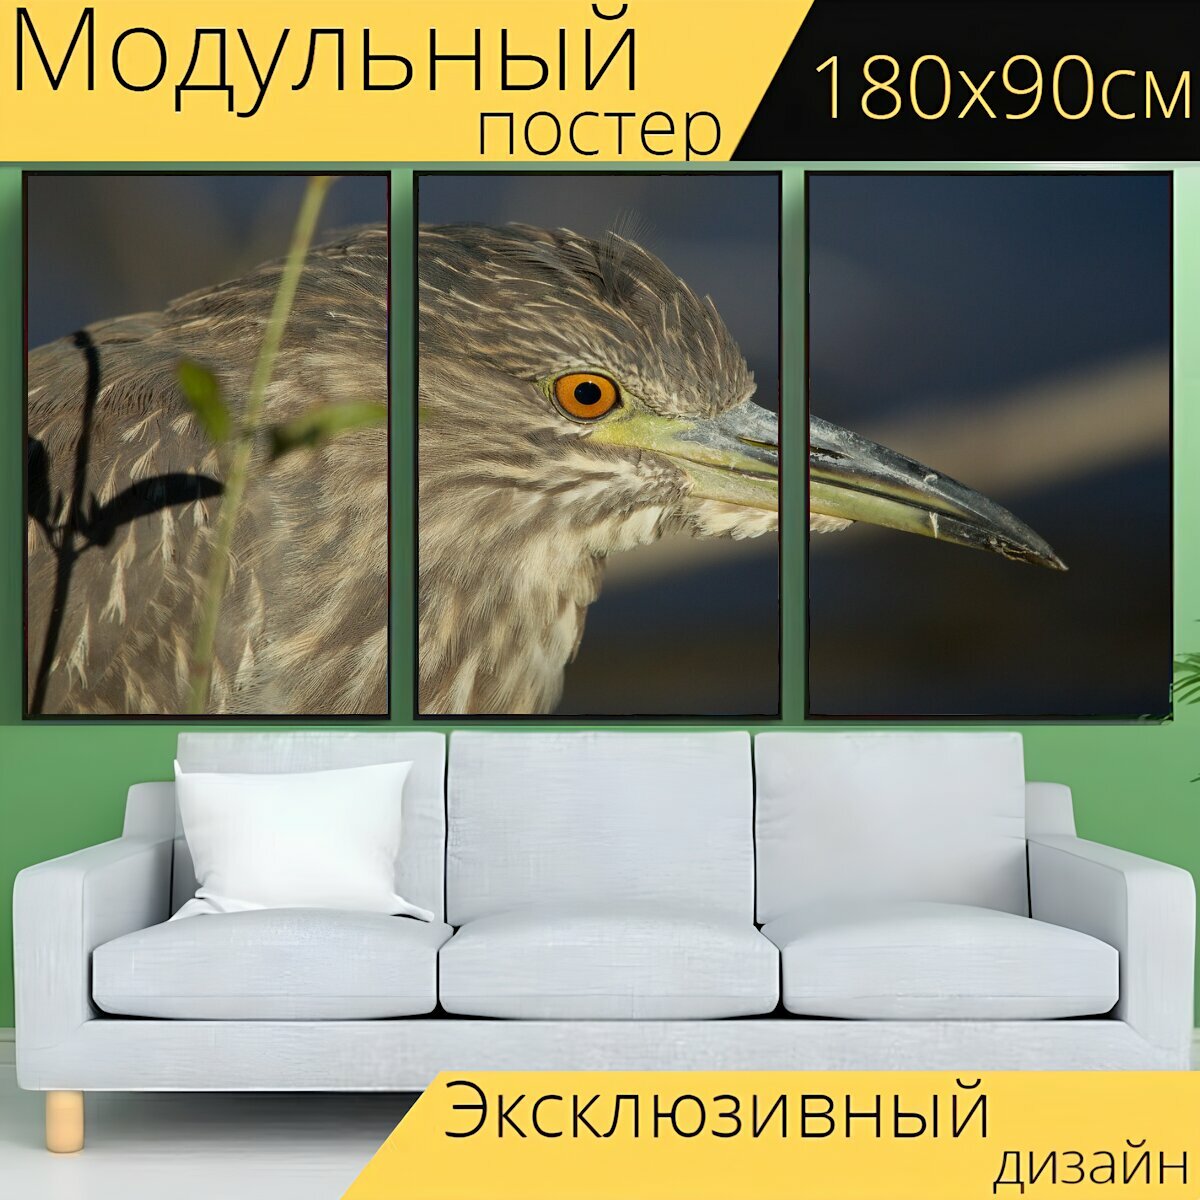 Модульный постер "Кваква, птица, животное" 180 x 90 см. для интерьера